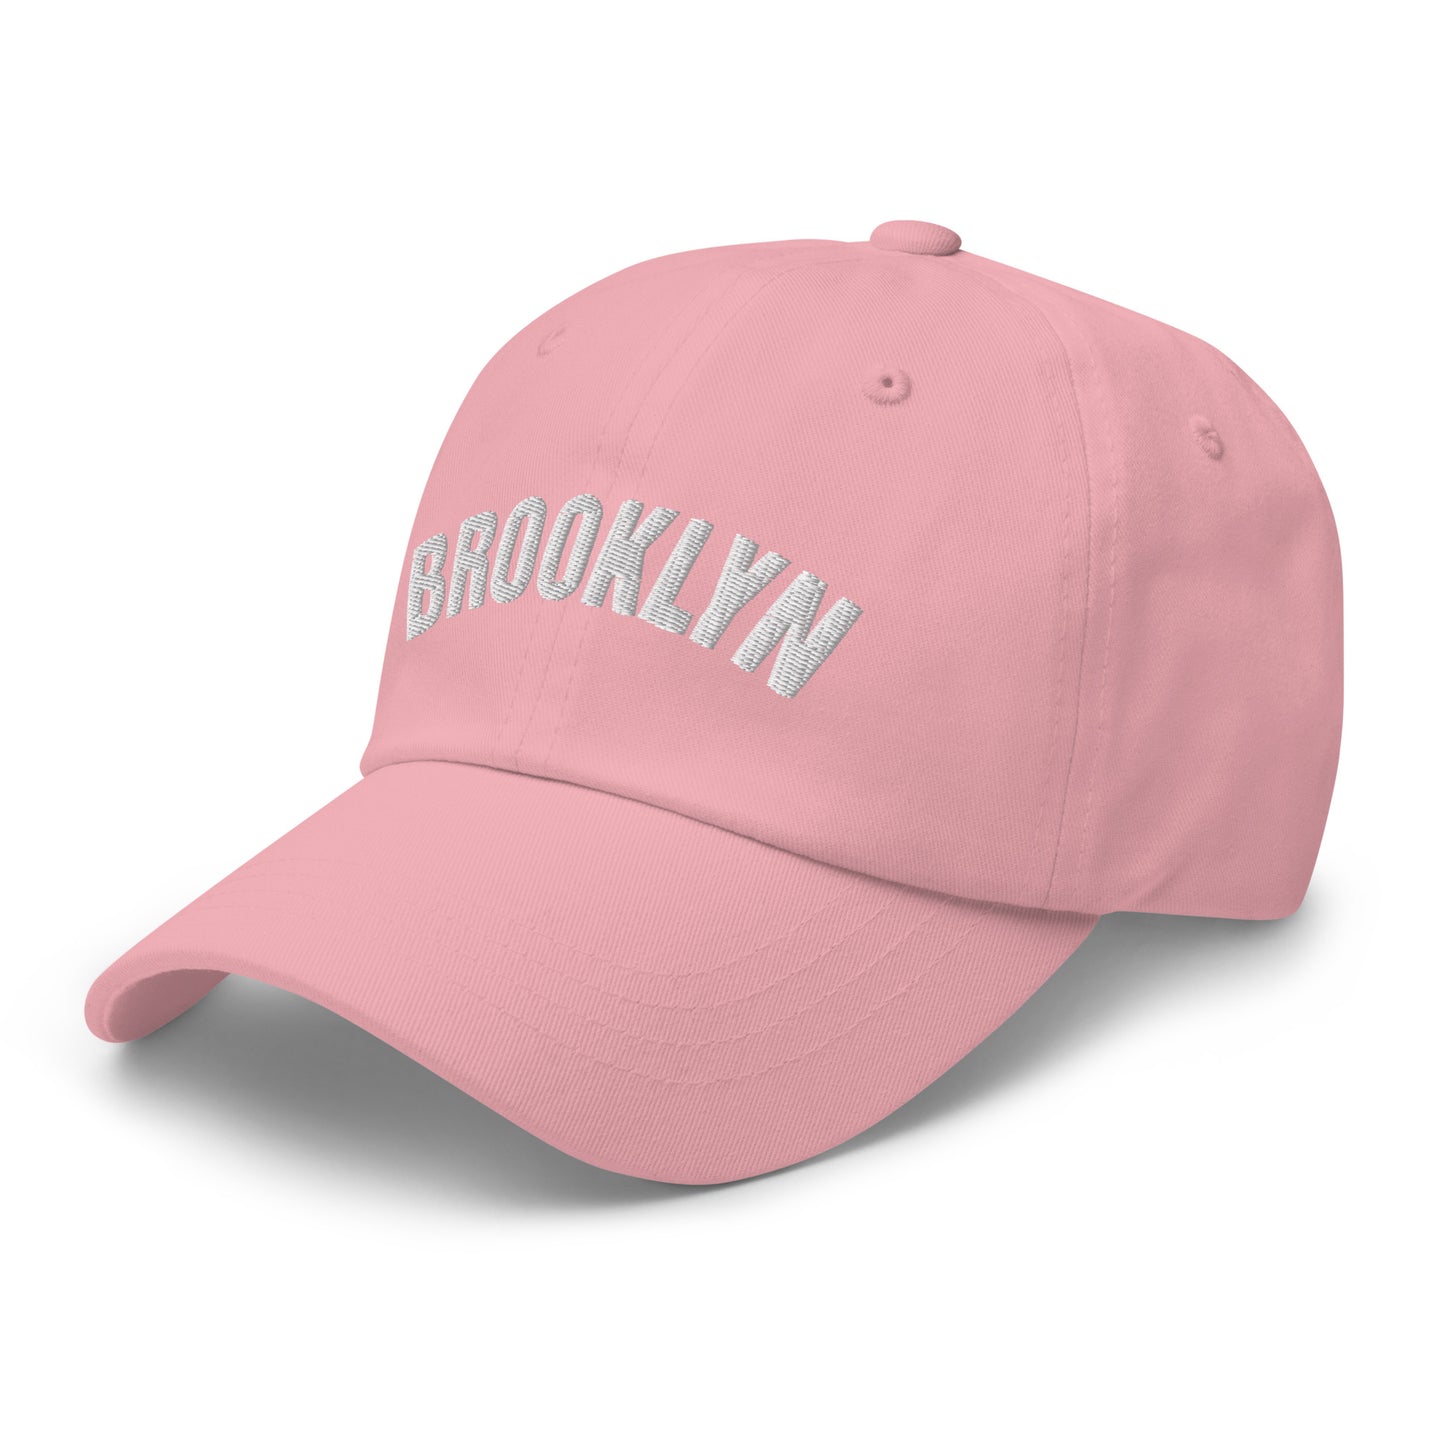 Brooklyn Baseball Cap- Dusty Rose